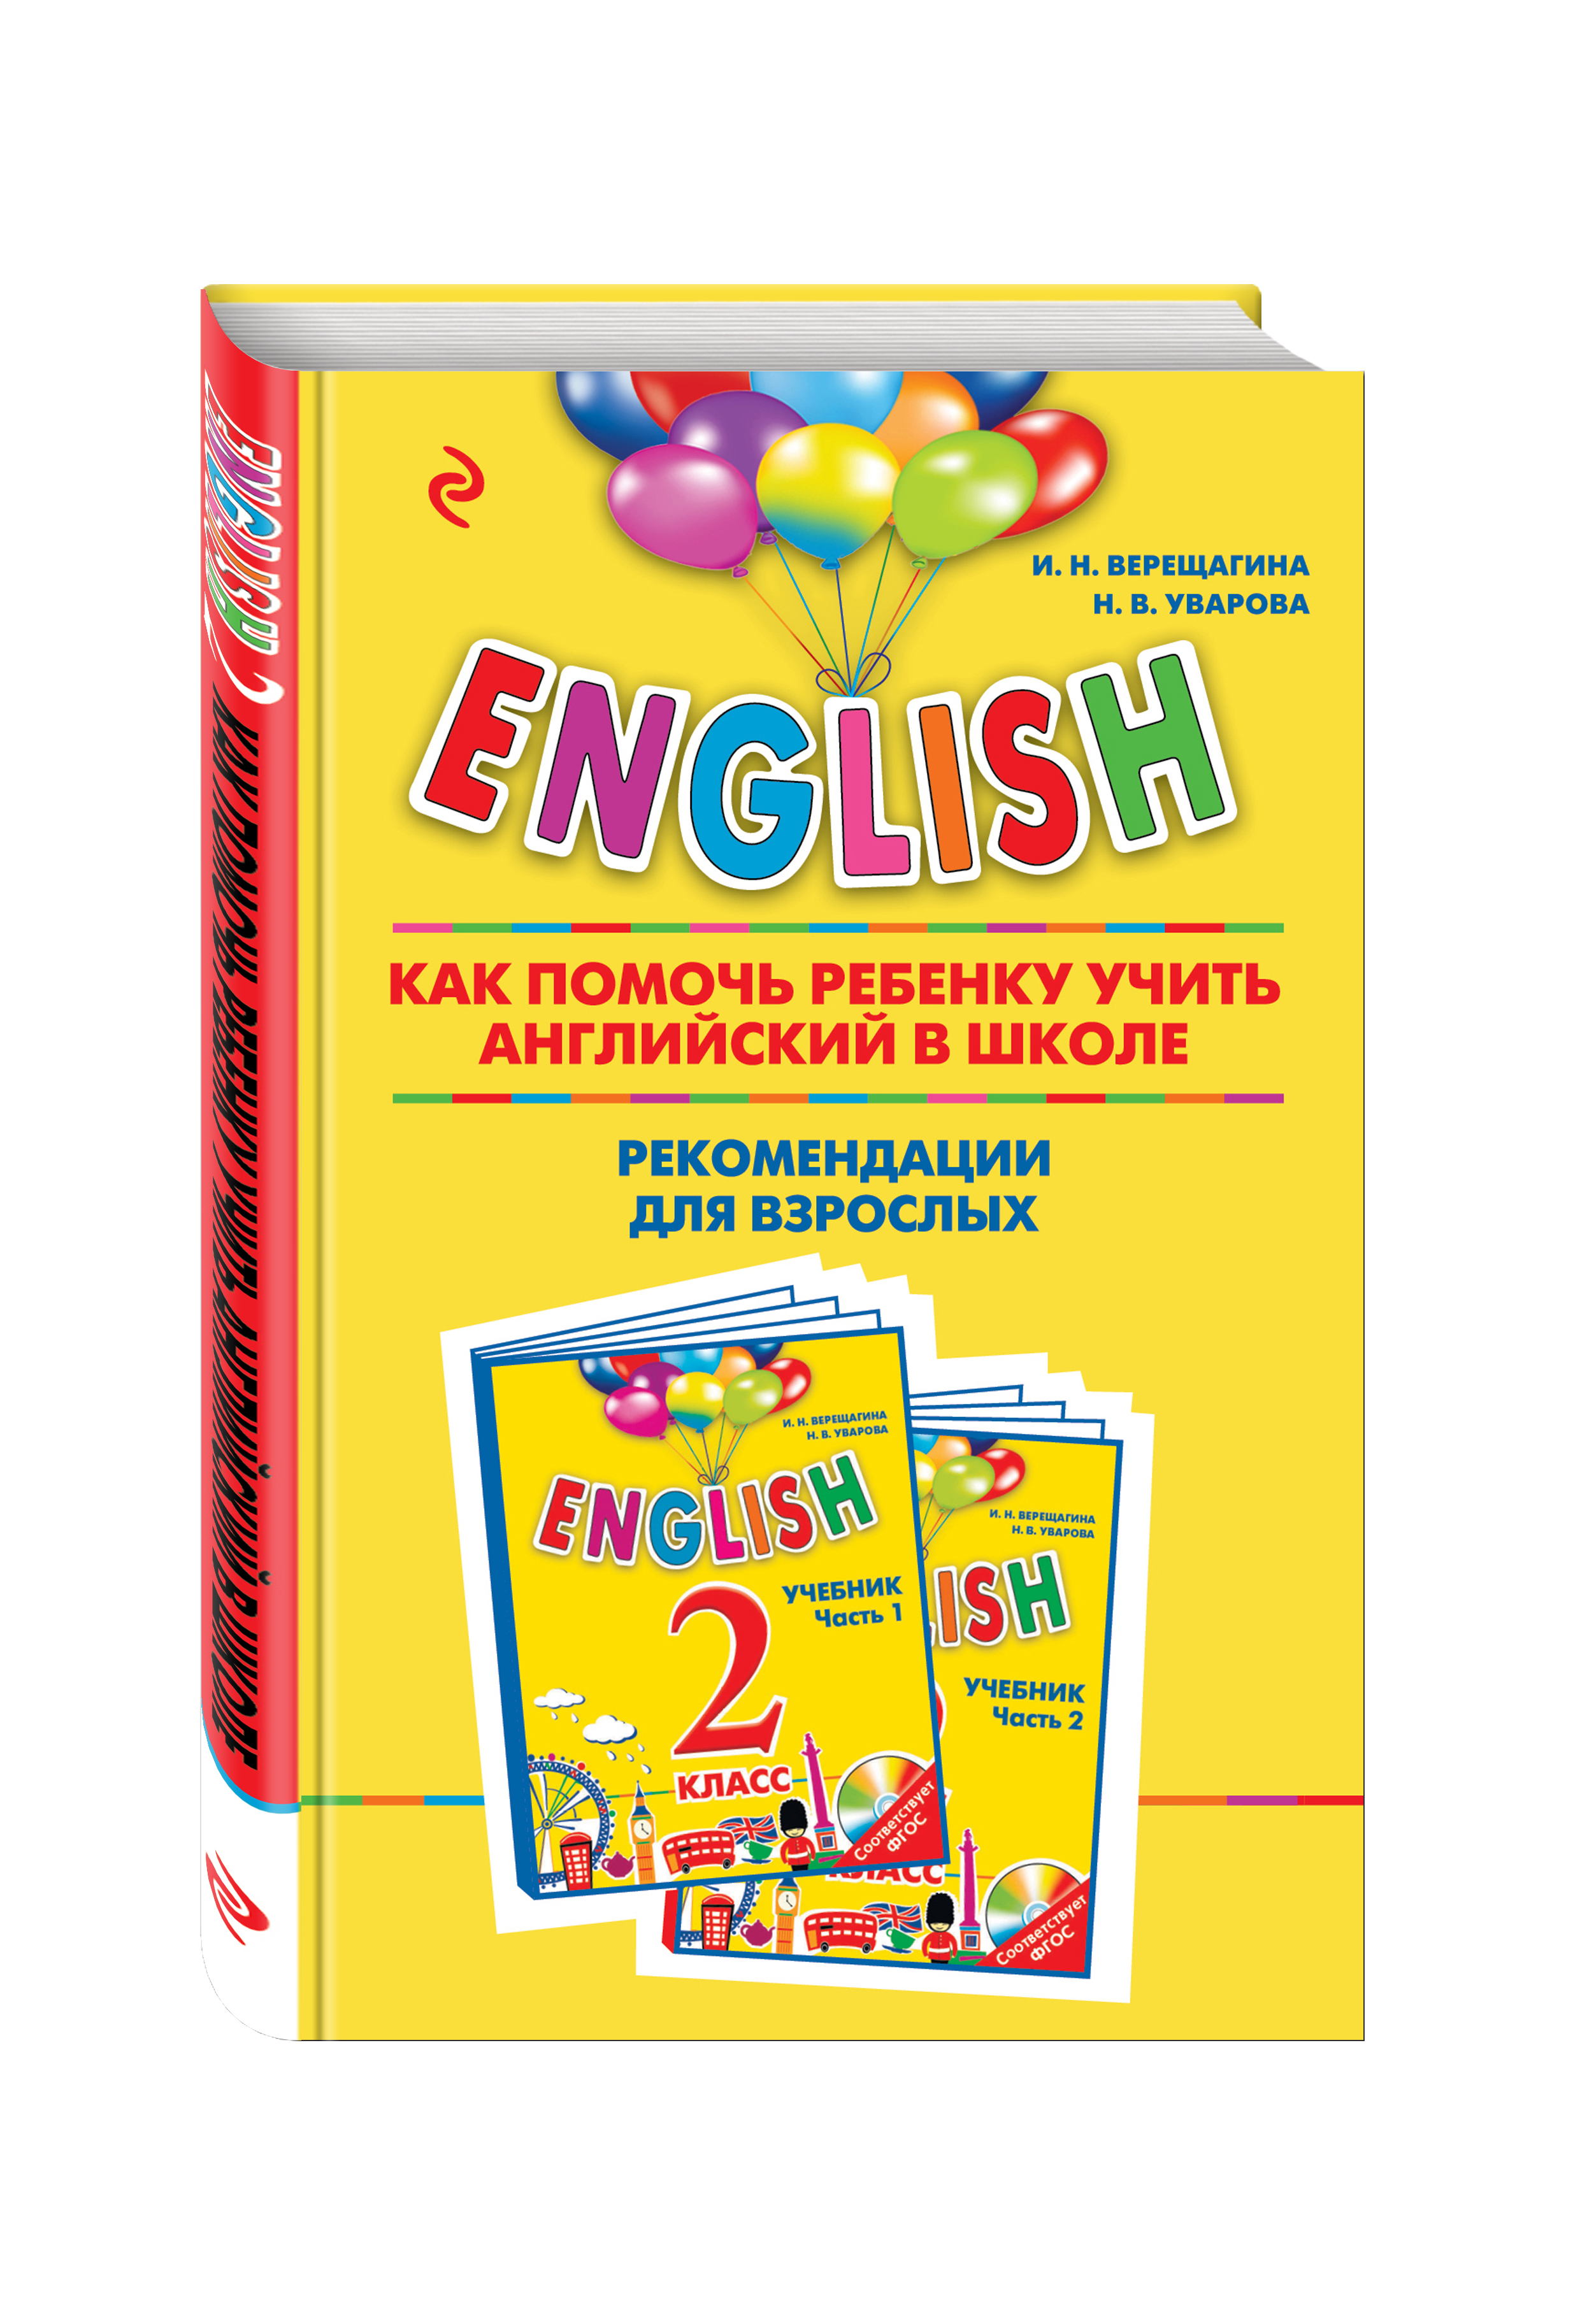 Учебник по английскому для малышей. По английски Уварова.